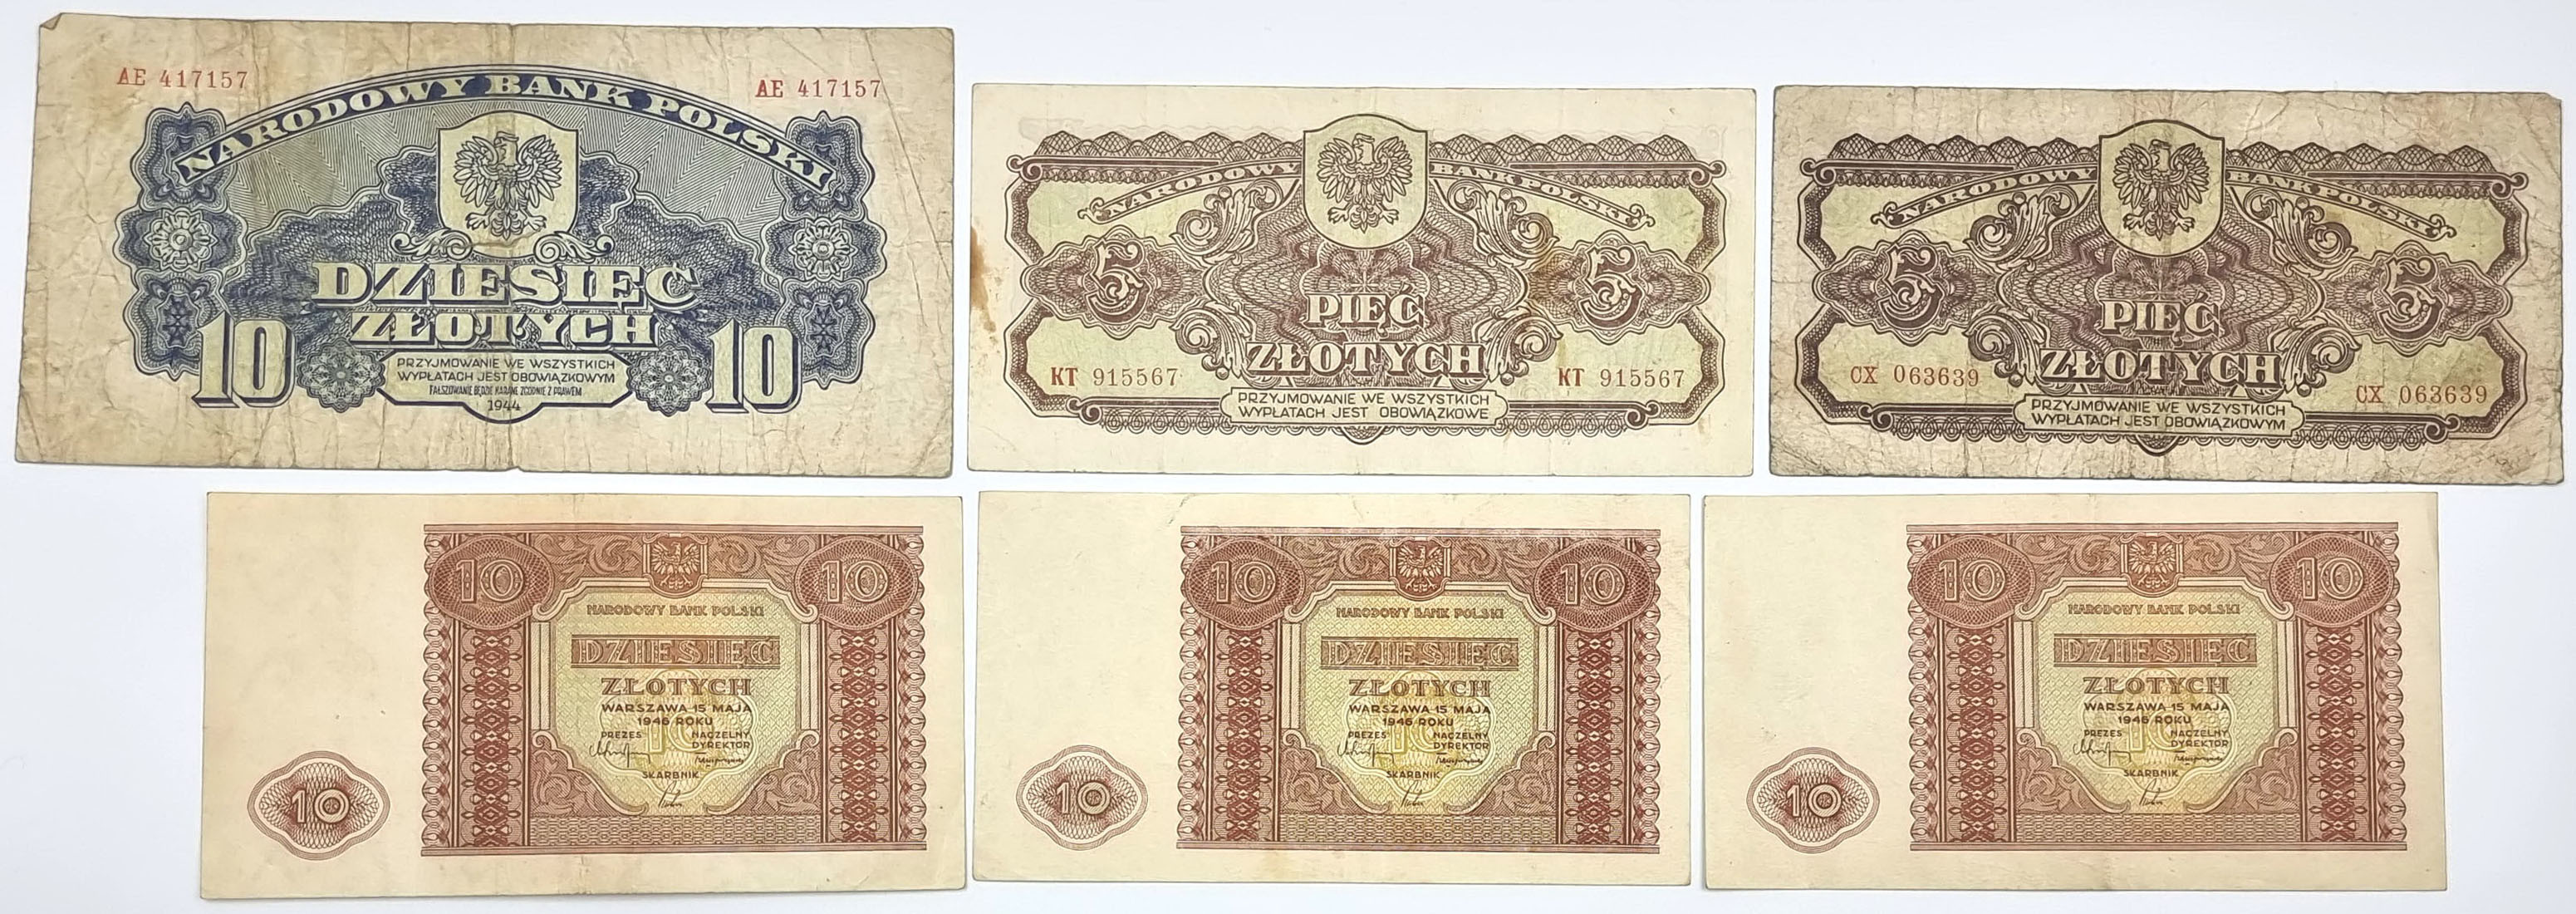 5 - 10 złotych 1944 i 1946, zestaw 5 banknotów